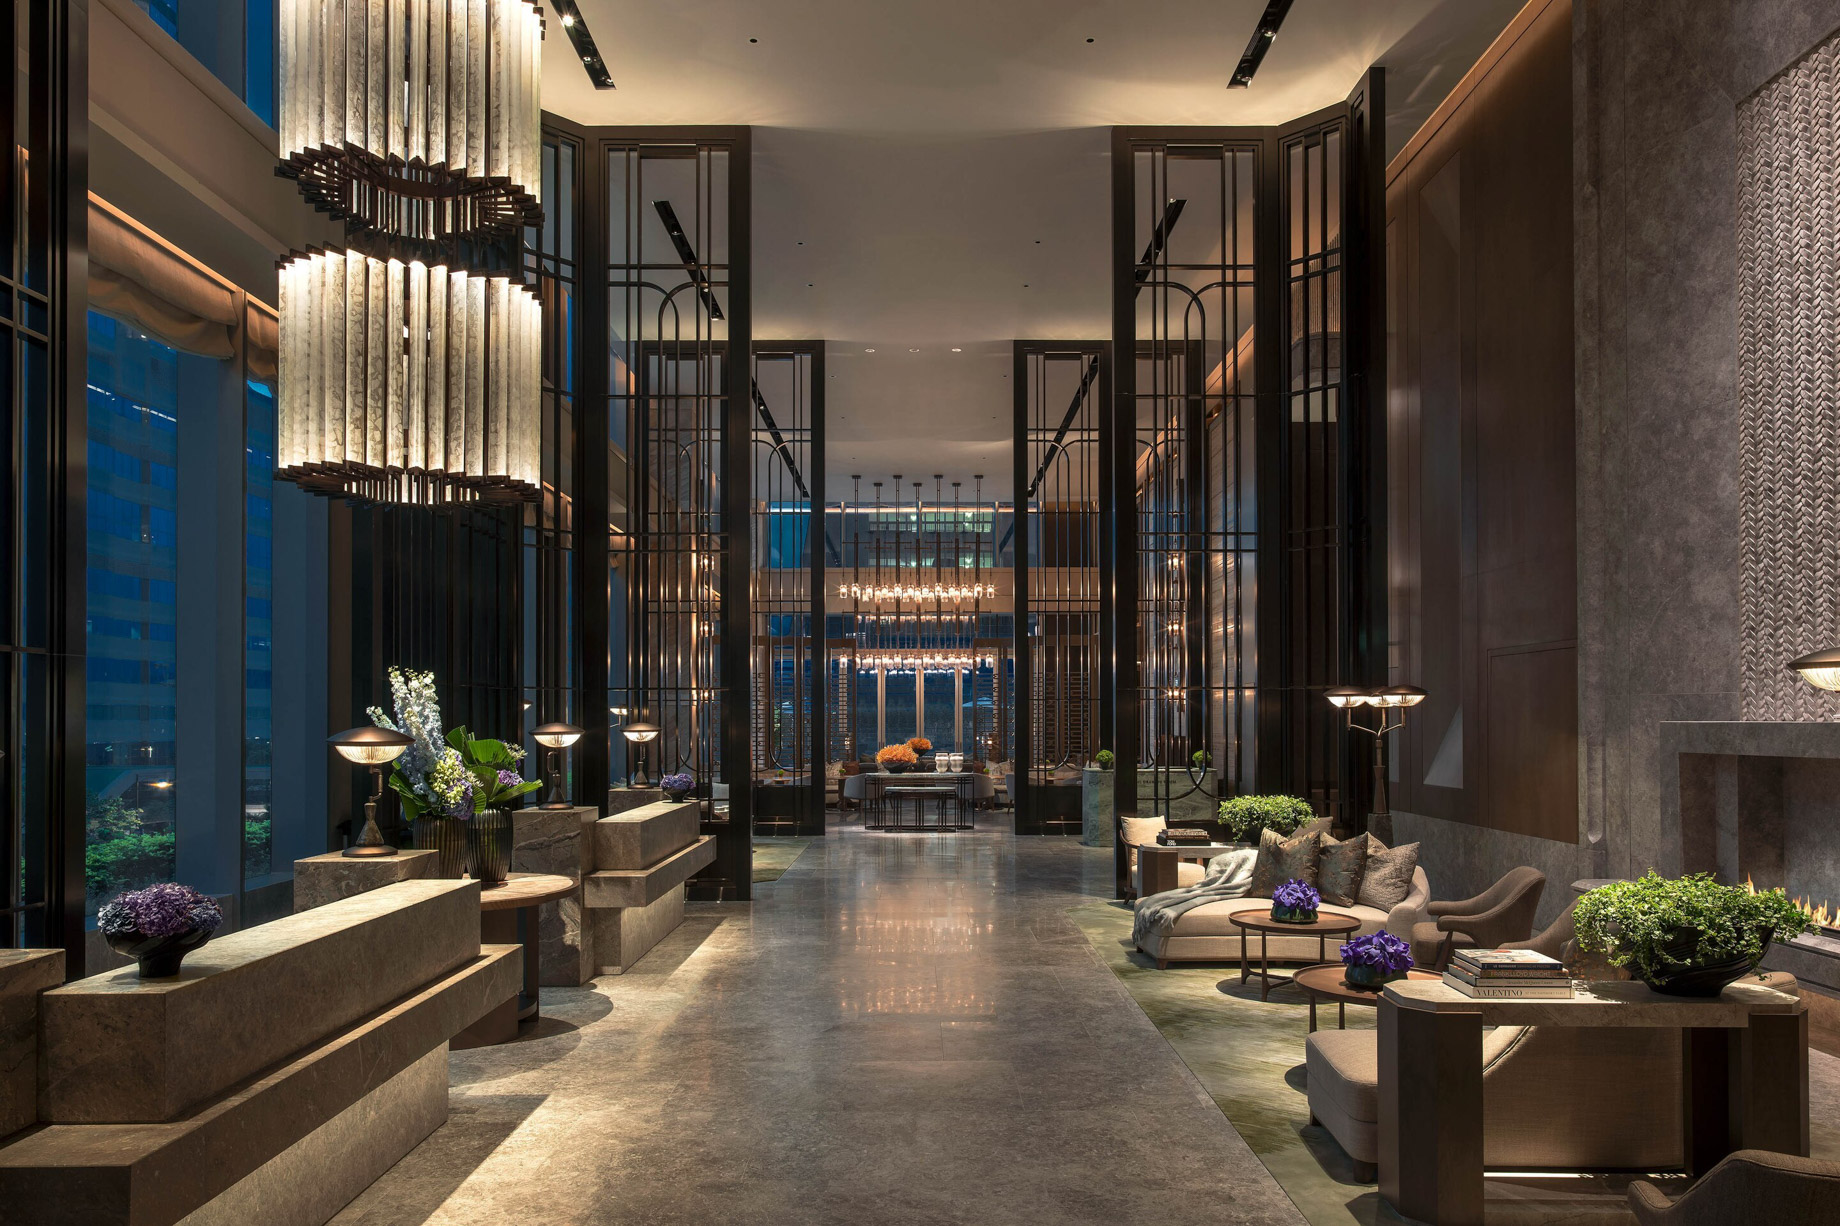 The St. Regis Hong Kong Hotel – Wan Chai, Hong Kong – The Great Room Seating